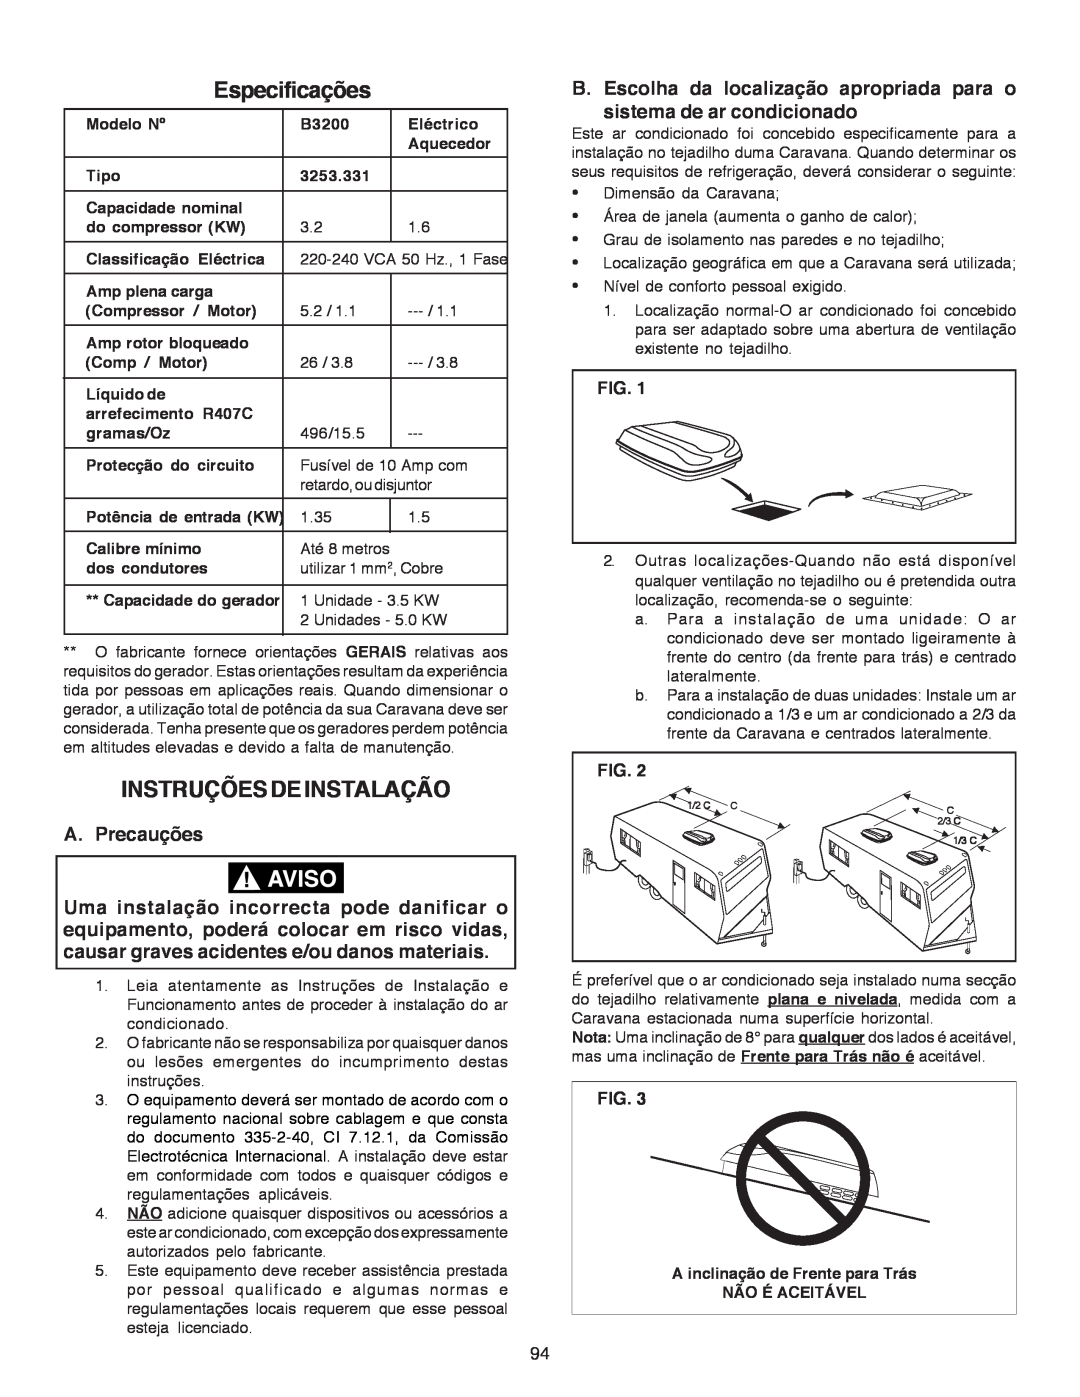 Dometic B3200 manual Especificações, Instruçõesdeinstalação, A. Precauções 